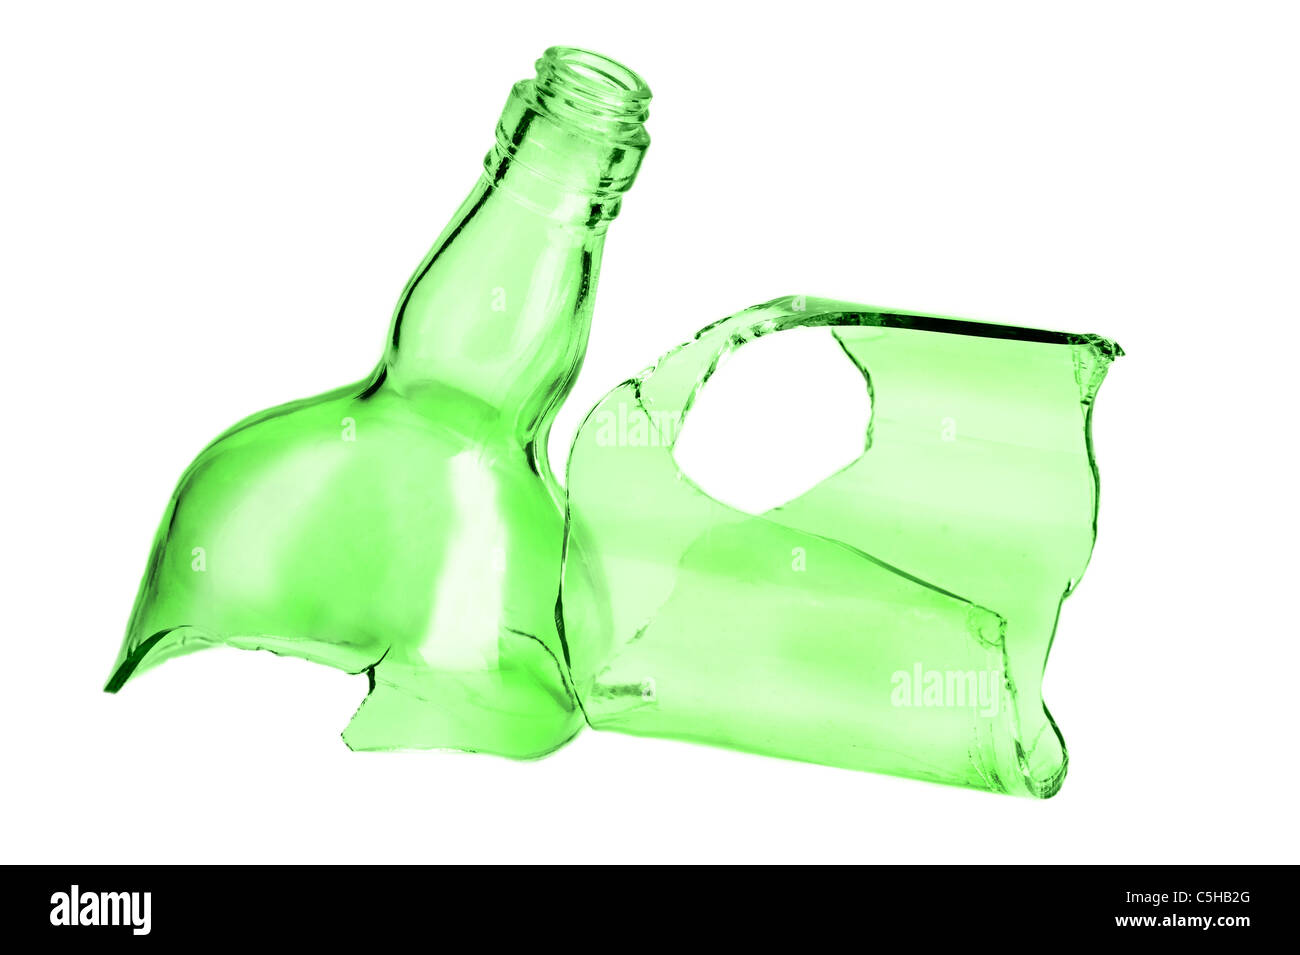 Las piezas rotas de botella verde aislado sobre fondo blanco. Foto de stock